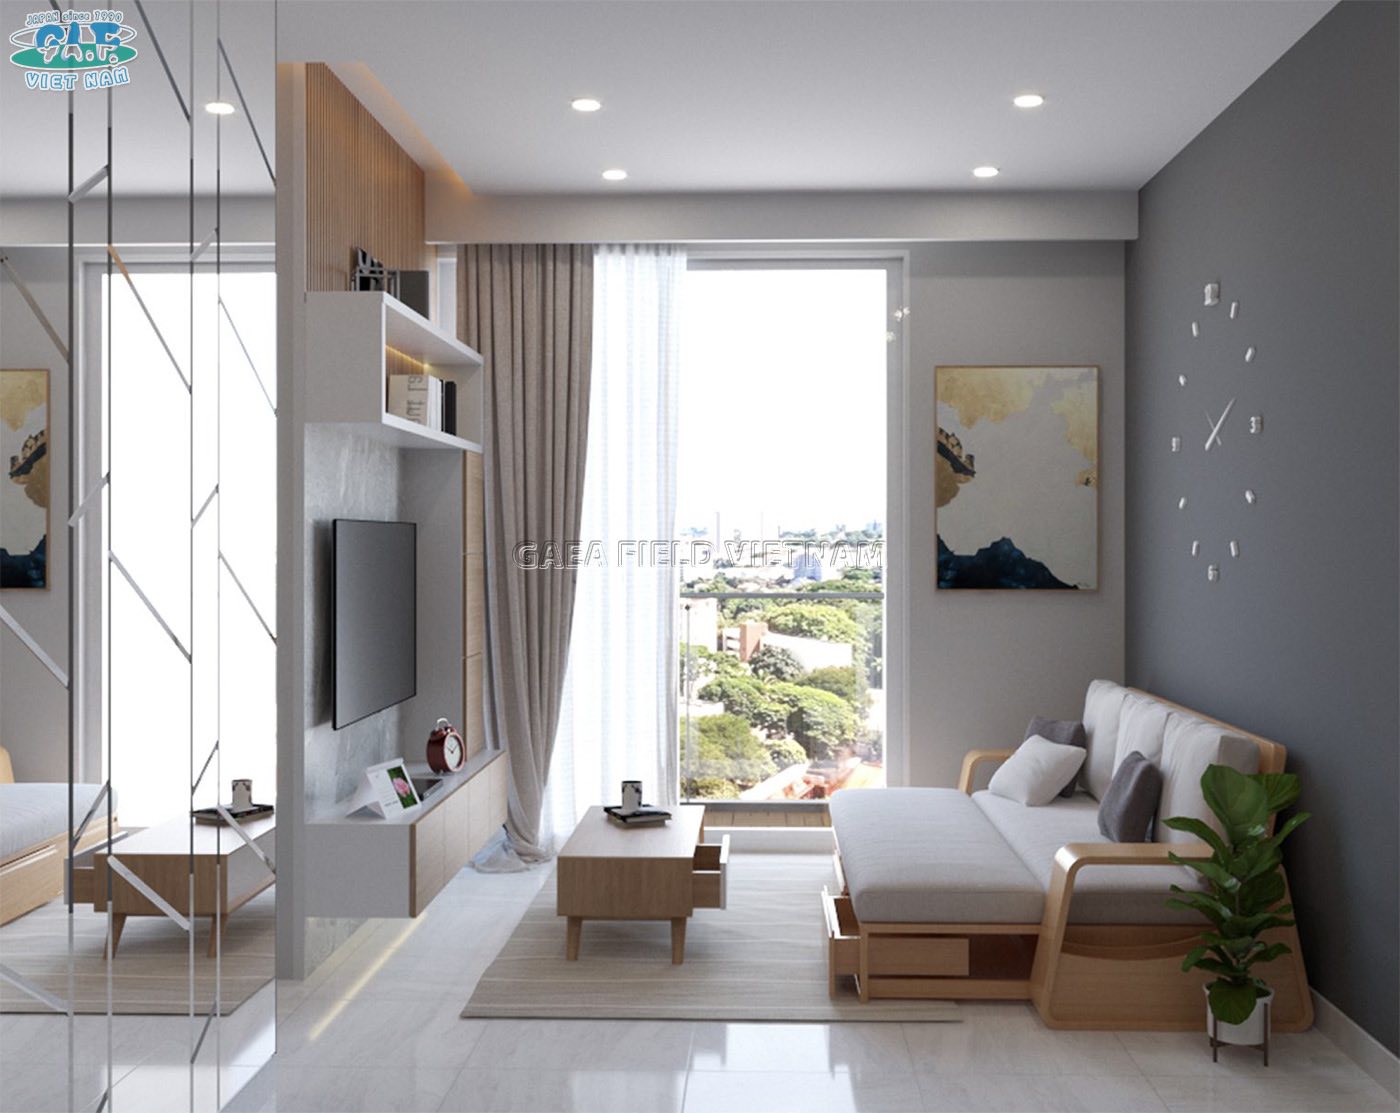 Với thiết kế nội thất căn hộ 52m2 Sunwah đến năm 2024, bạn sẽ được trải nghiệm một không gian sống đẳng cấp, hiện đại và đầy tiện nghi. Sử dụng các vật liệu chất lượng cao cấp, kết hợp với những gam màu trung tính, tất cả đem lại một cảm giác thư giãn, thoải mái để bạn có một cuộc sống tốt hơn.